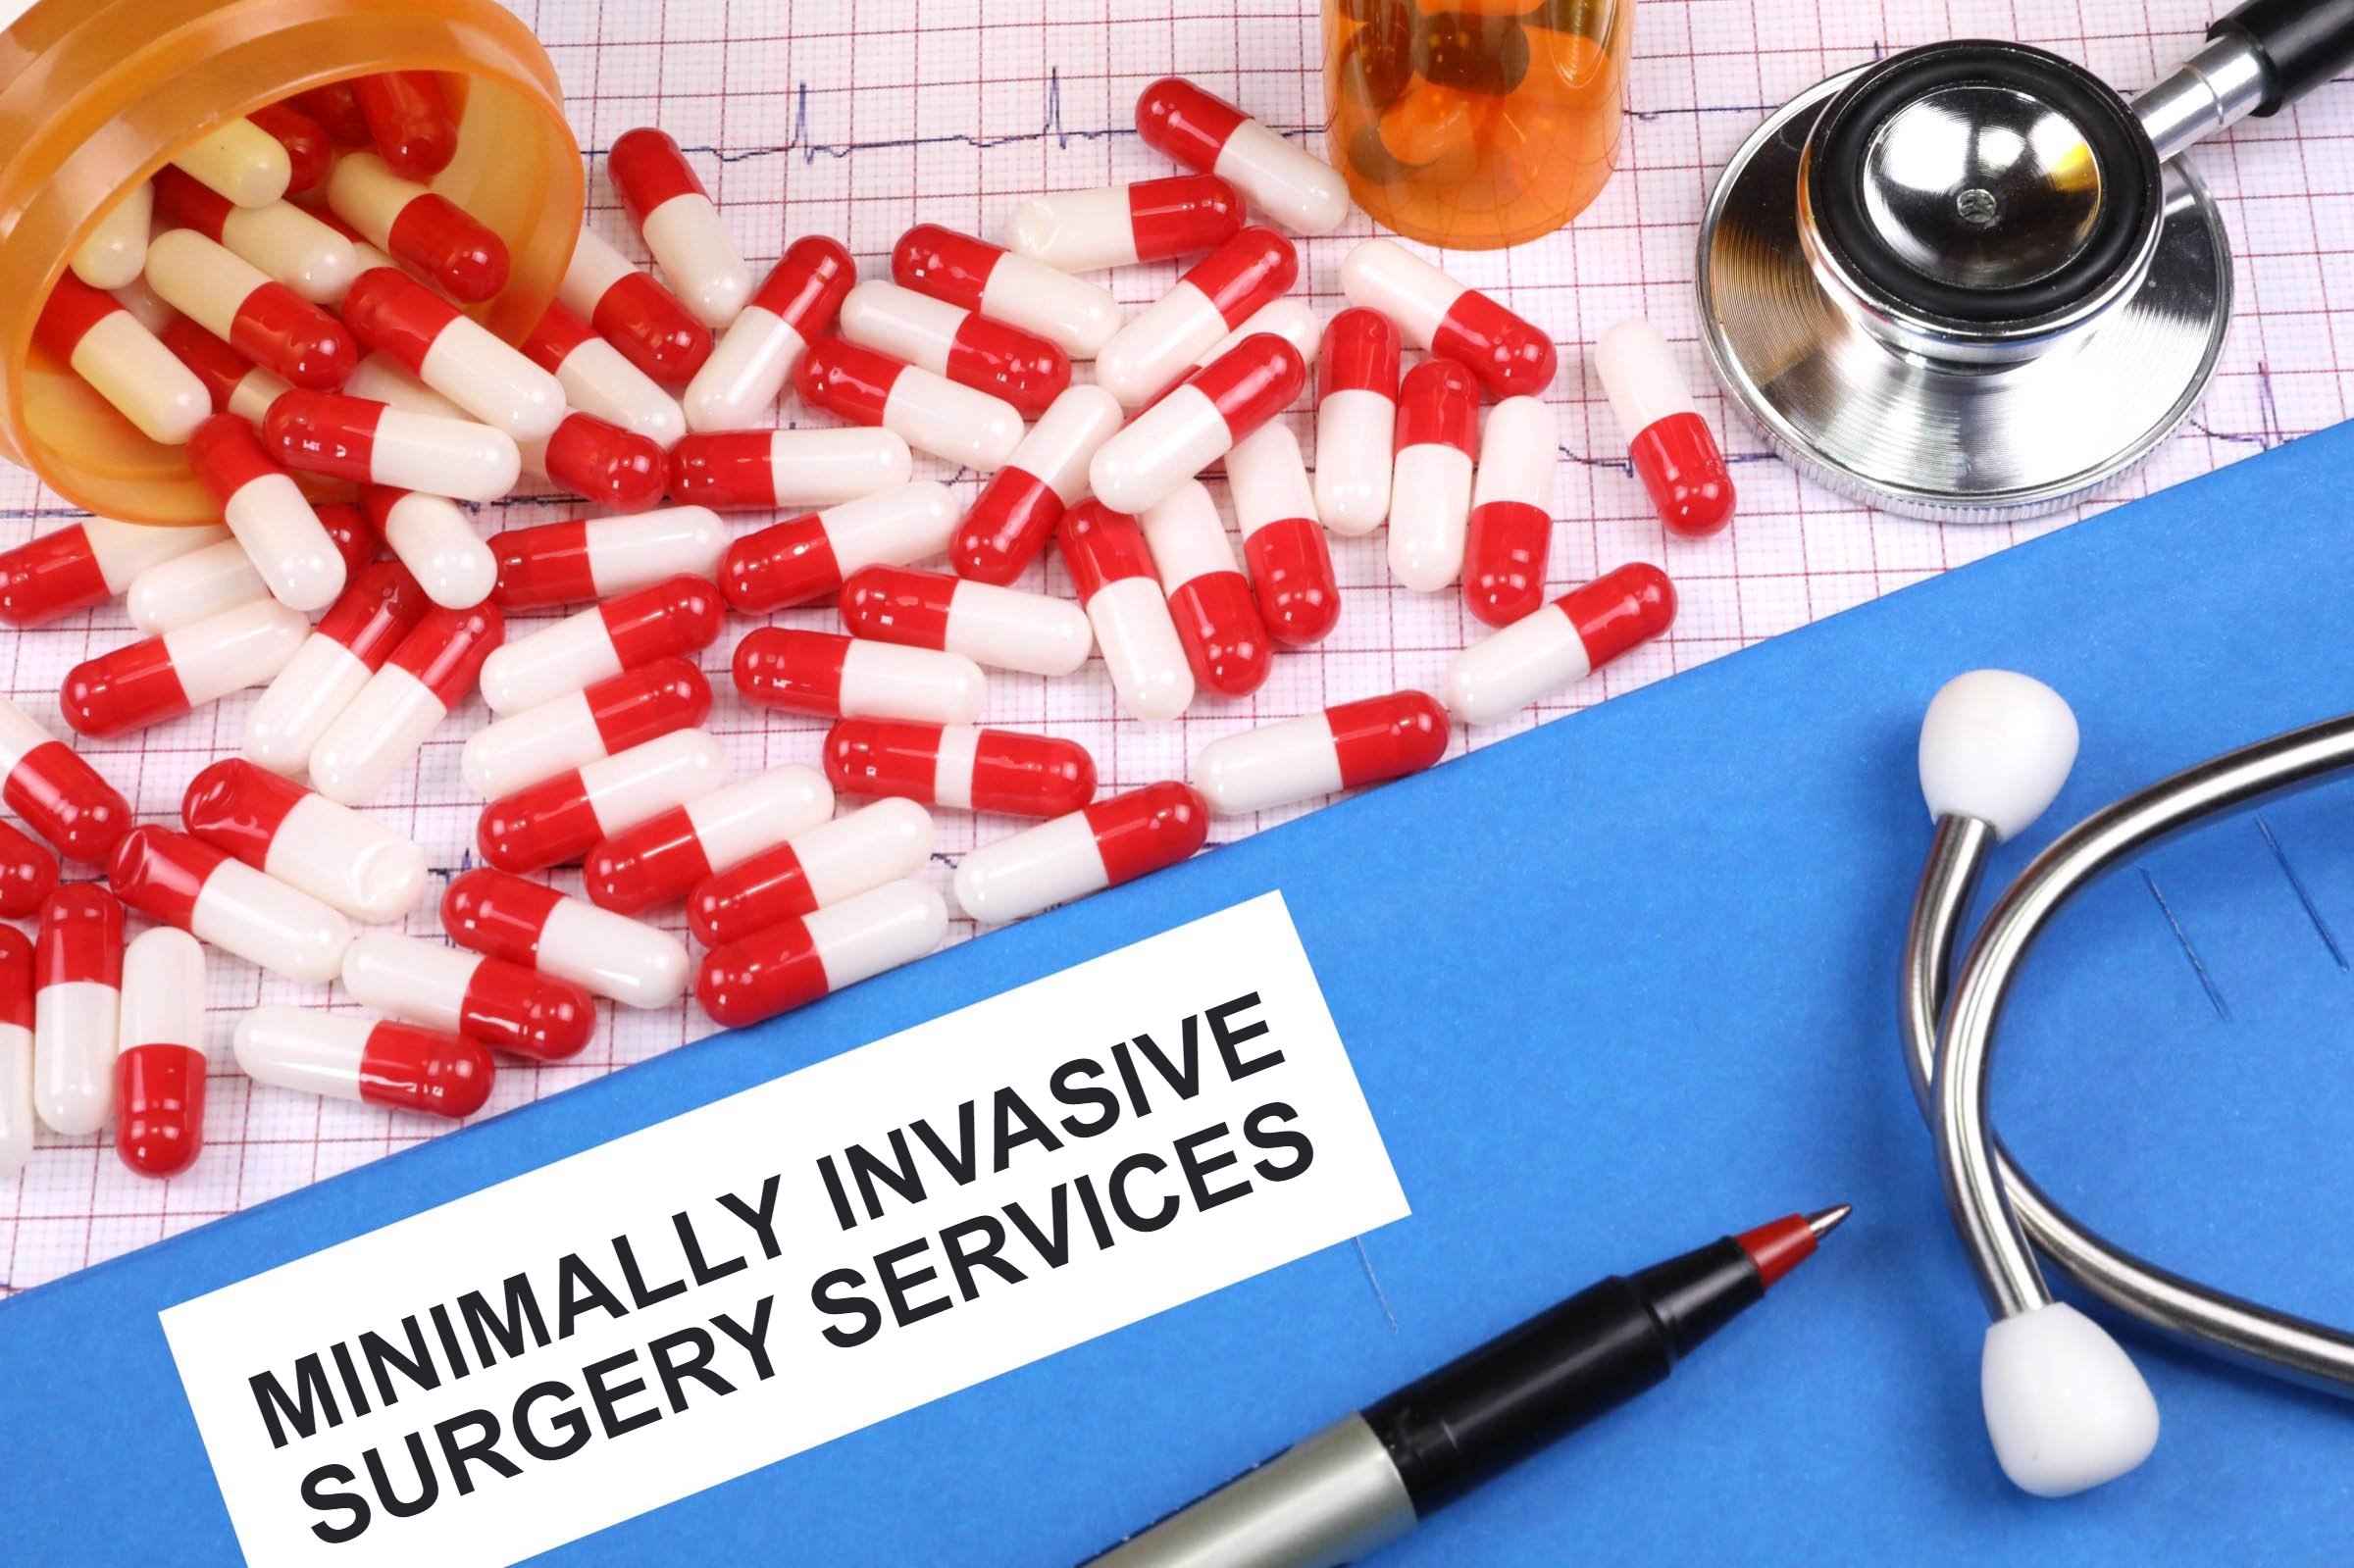 minimally invasive surgery services